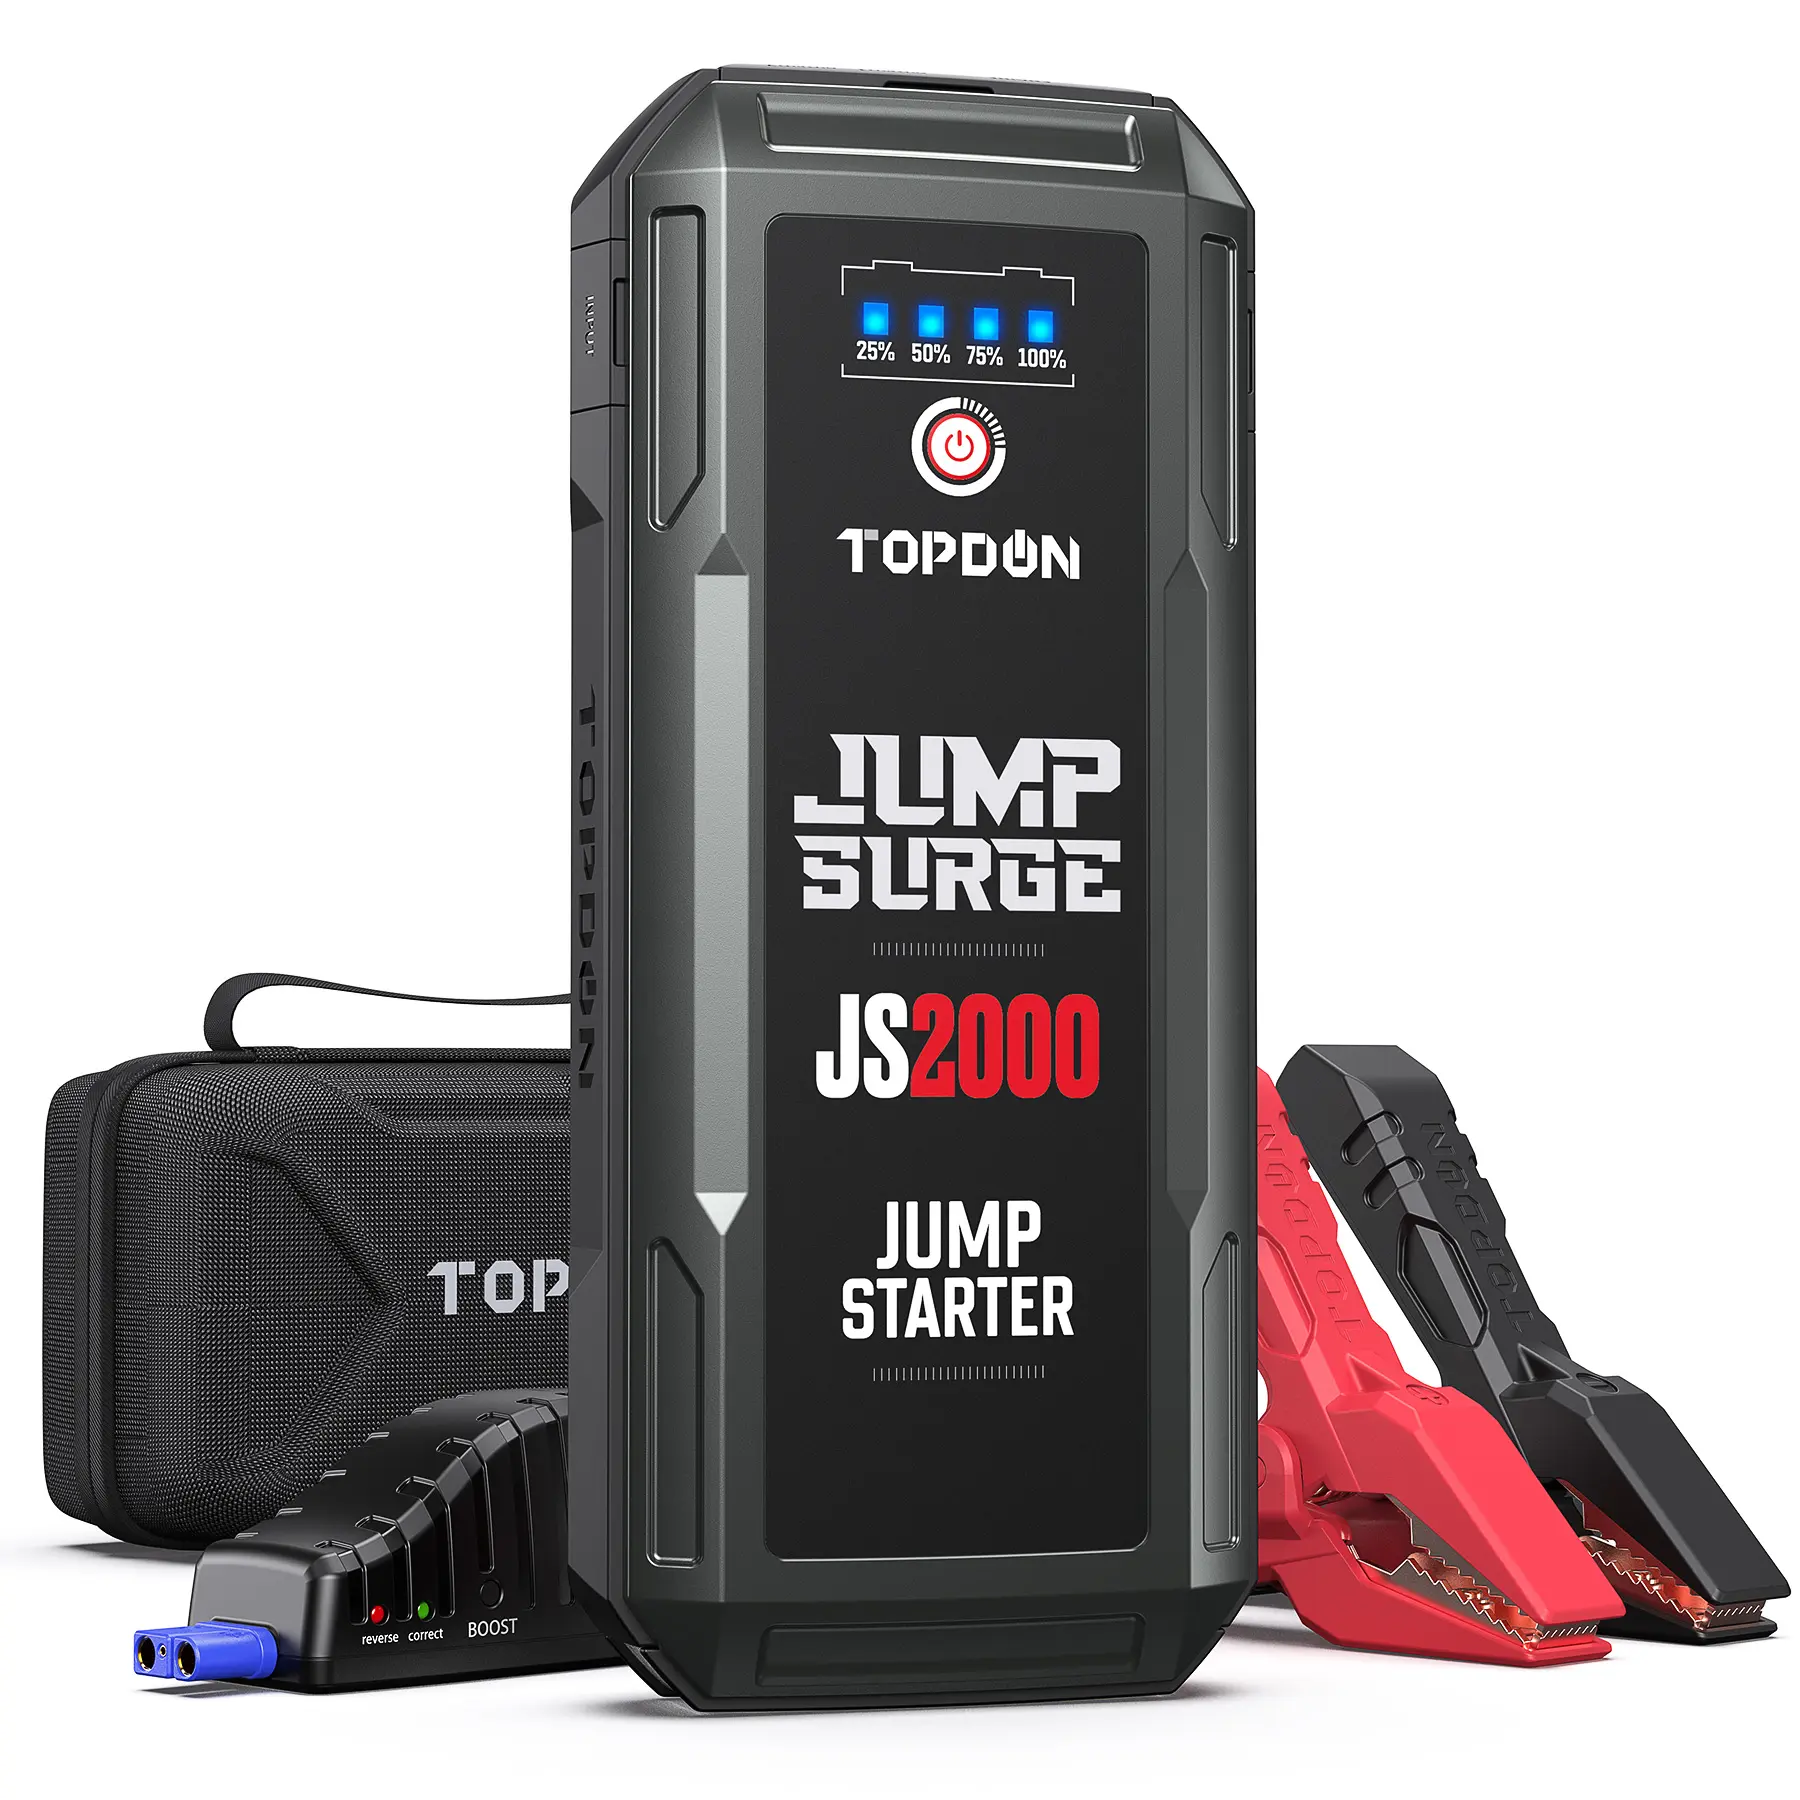 TOPDON-arrancador de batería portátil para coche, dispositivo de arranque de motor de emergencia de 12V, Lifepo4, de alta calidad, 2000A